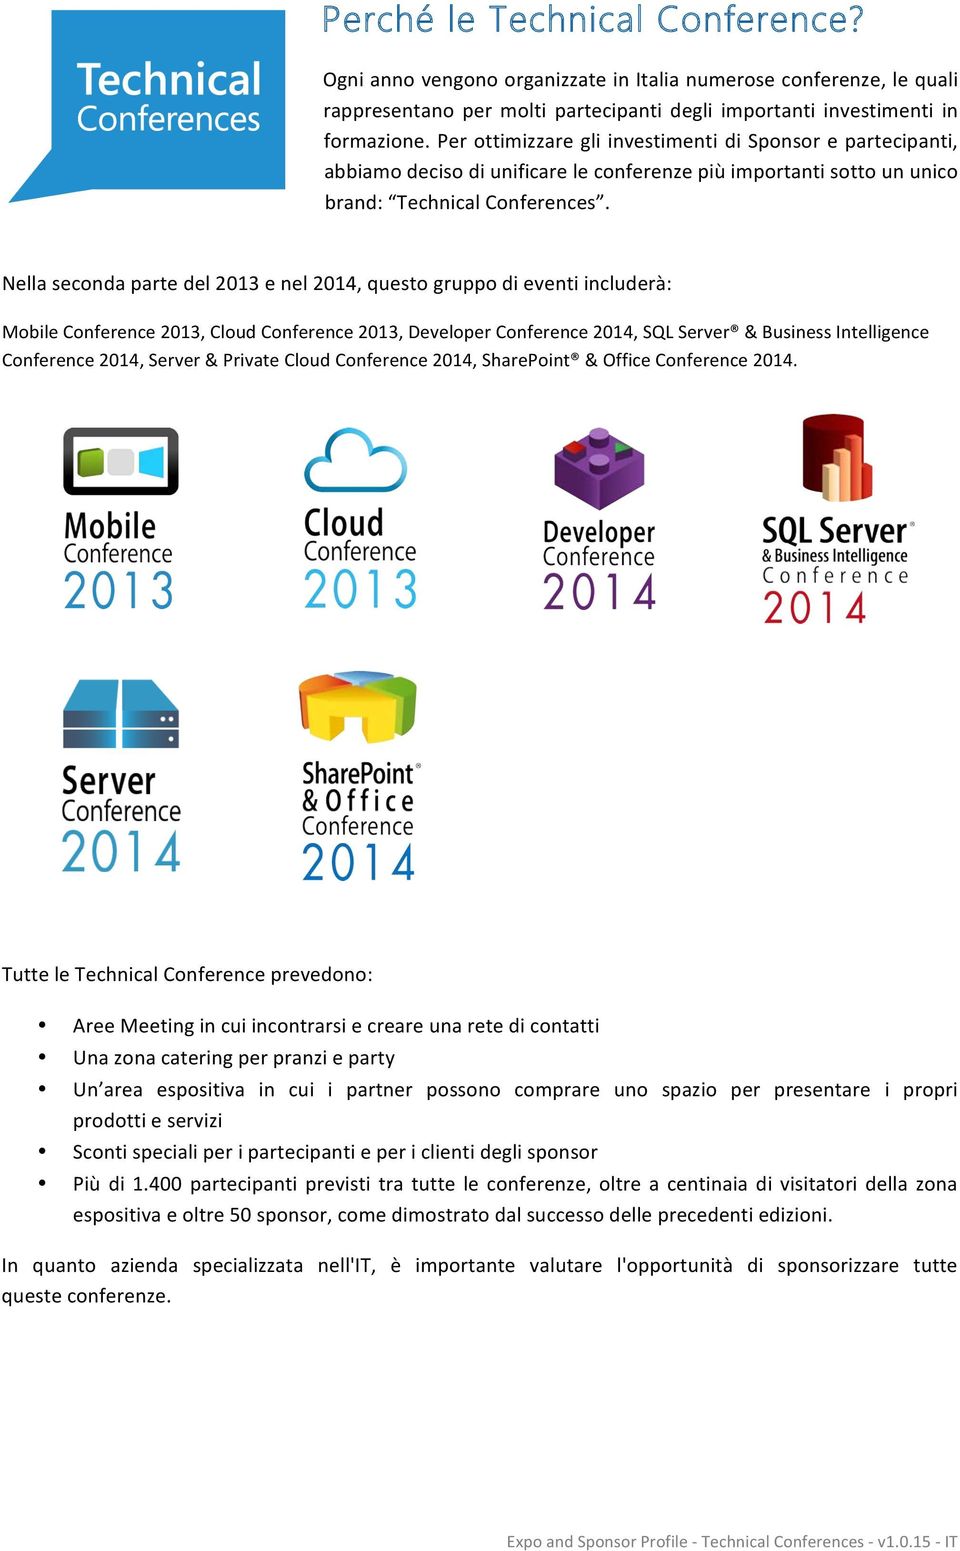 Nella seconda parte del 2013 e nel 2014, questo gruppo di eventi includerà: Mobile Conference 2013, Cloud Conference 2013, Developer Conference 2014, SQL Server & Business Intelligence Conference